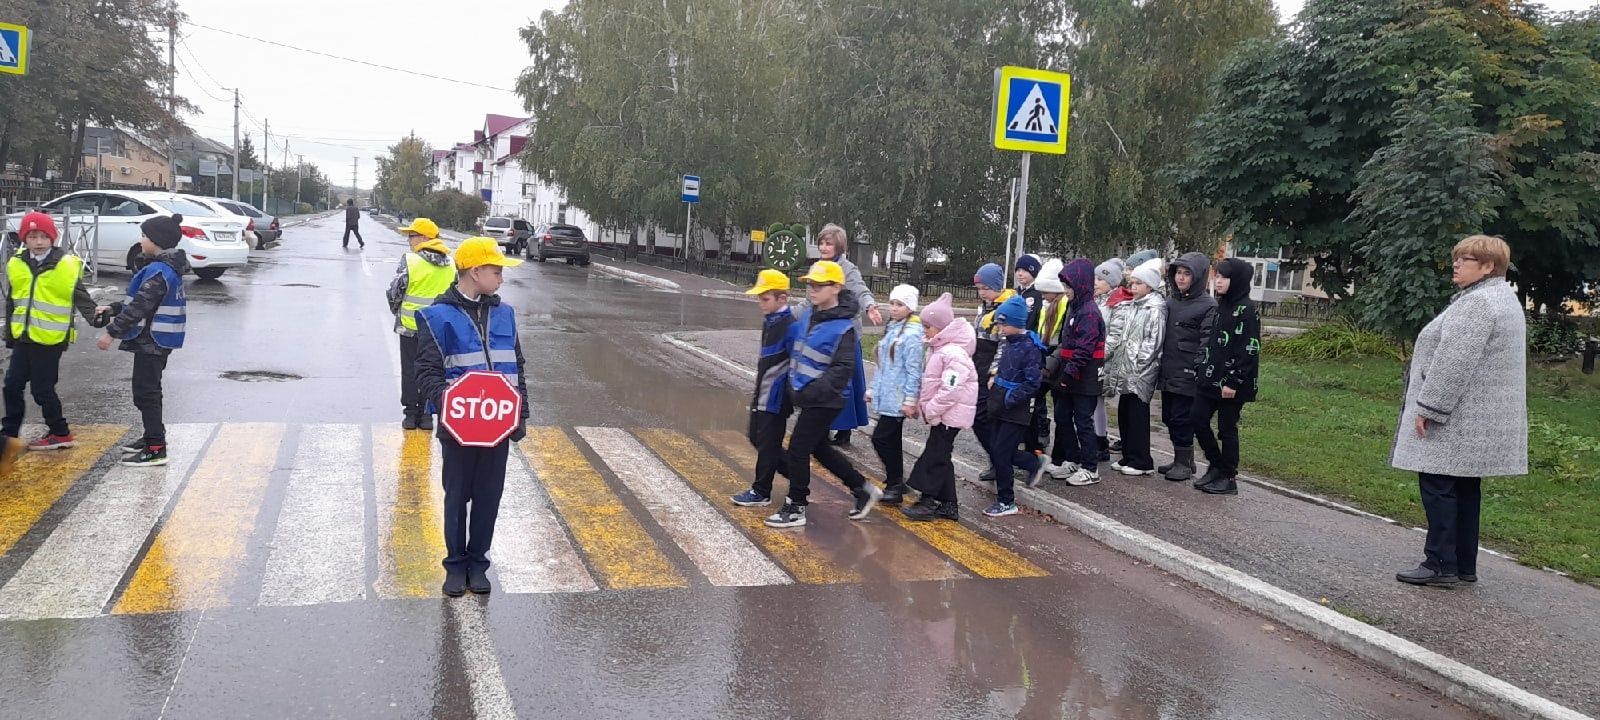 Отряд ЮИД начальной школы показал, как правильно переходить дорогу